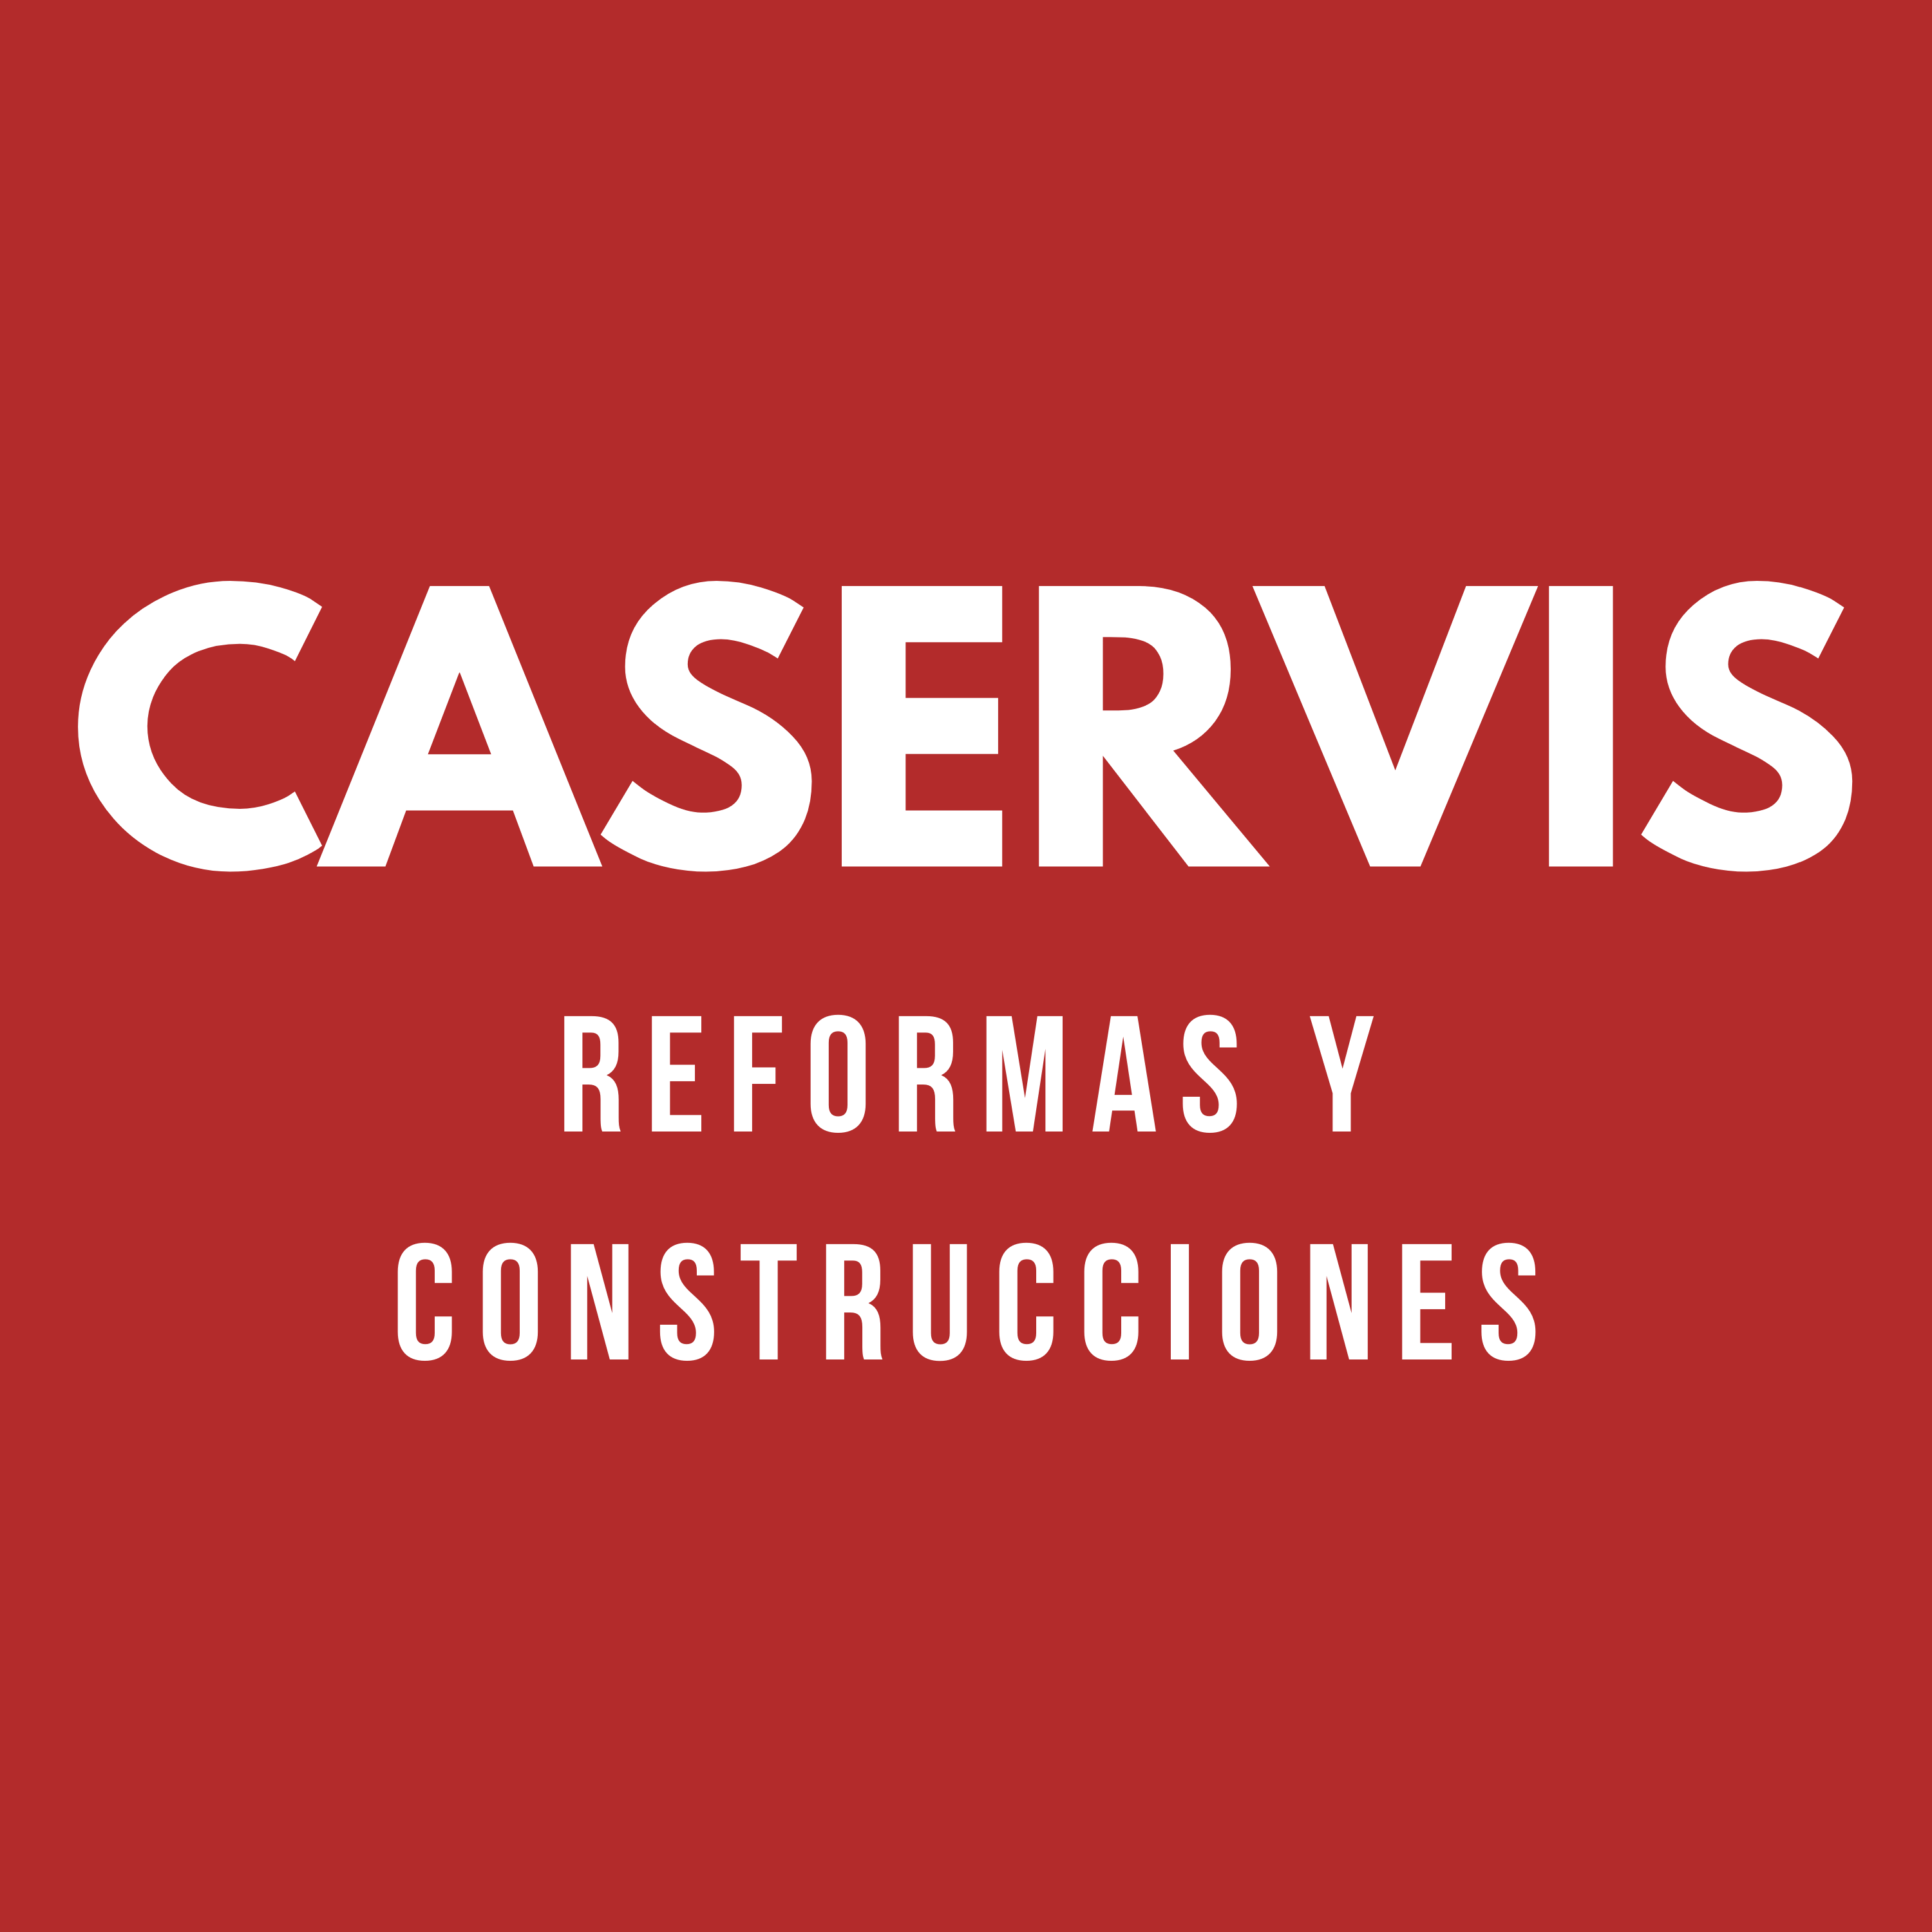 Caservis Reformas y Construcciones Castellón Logo